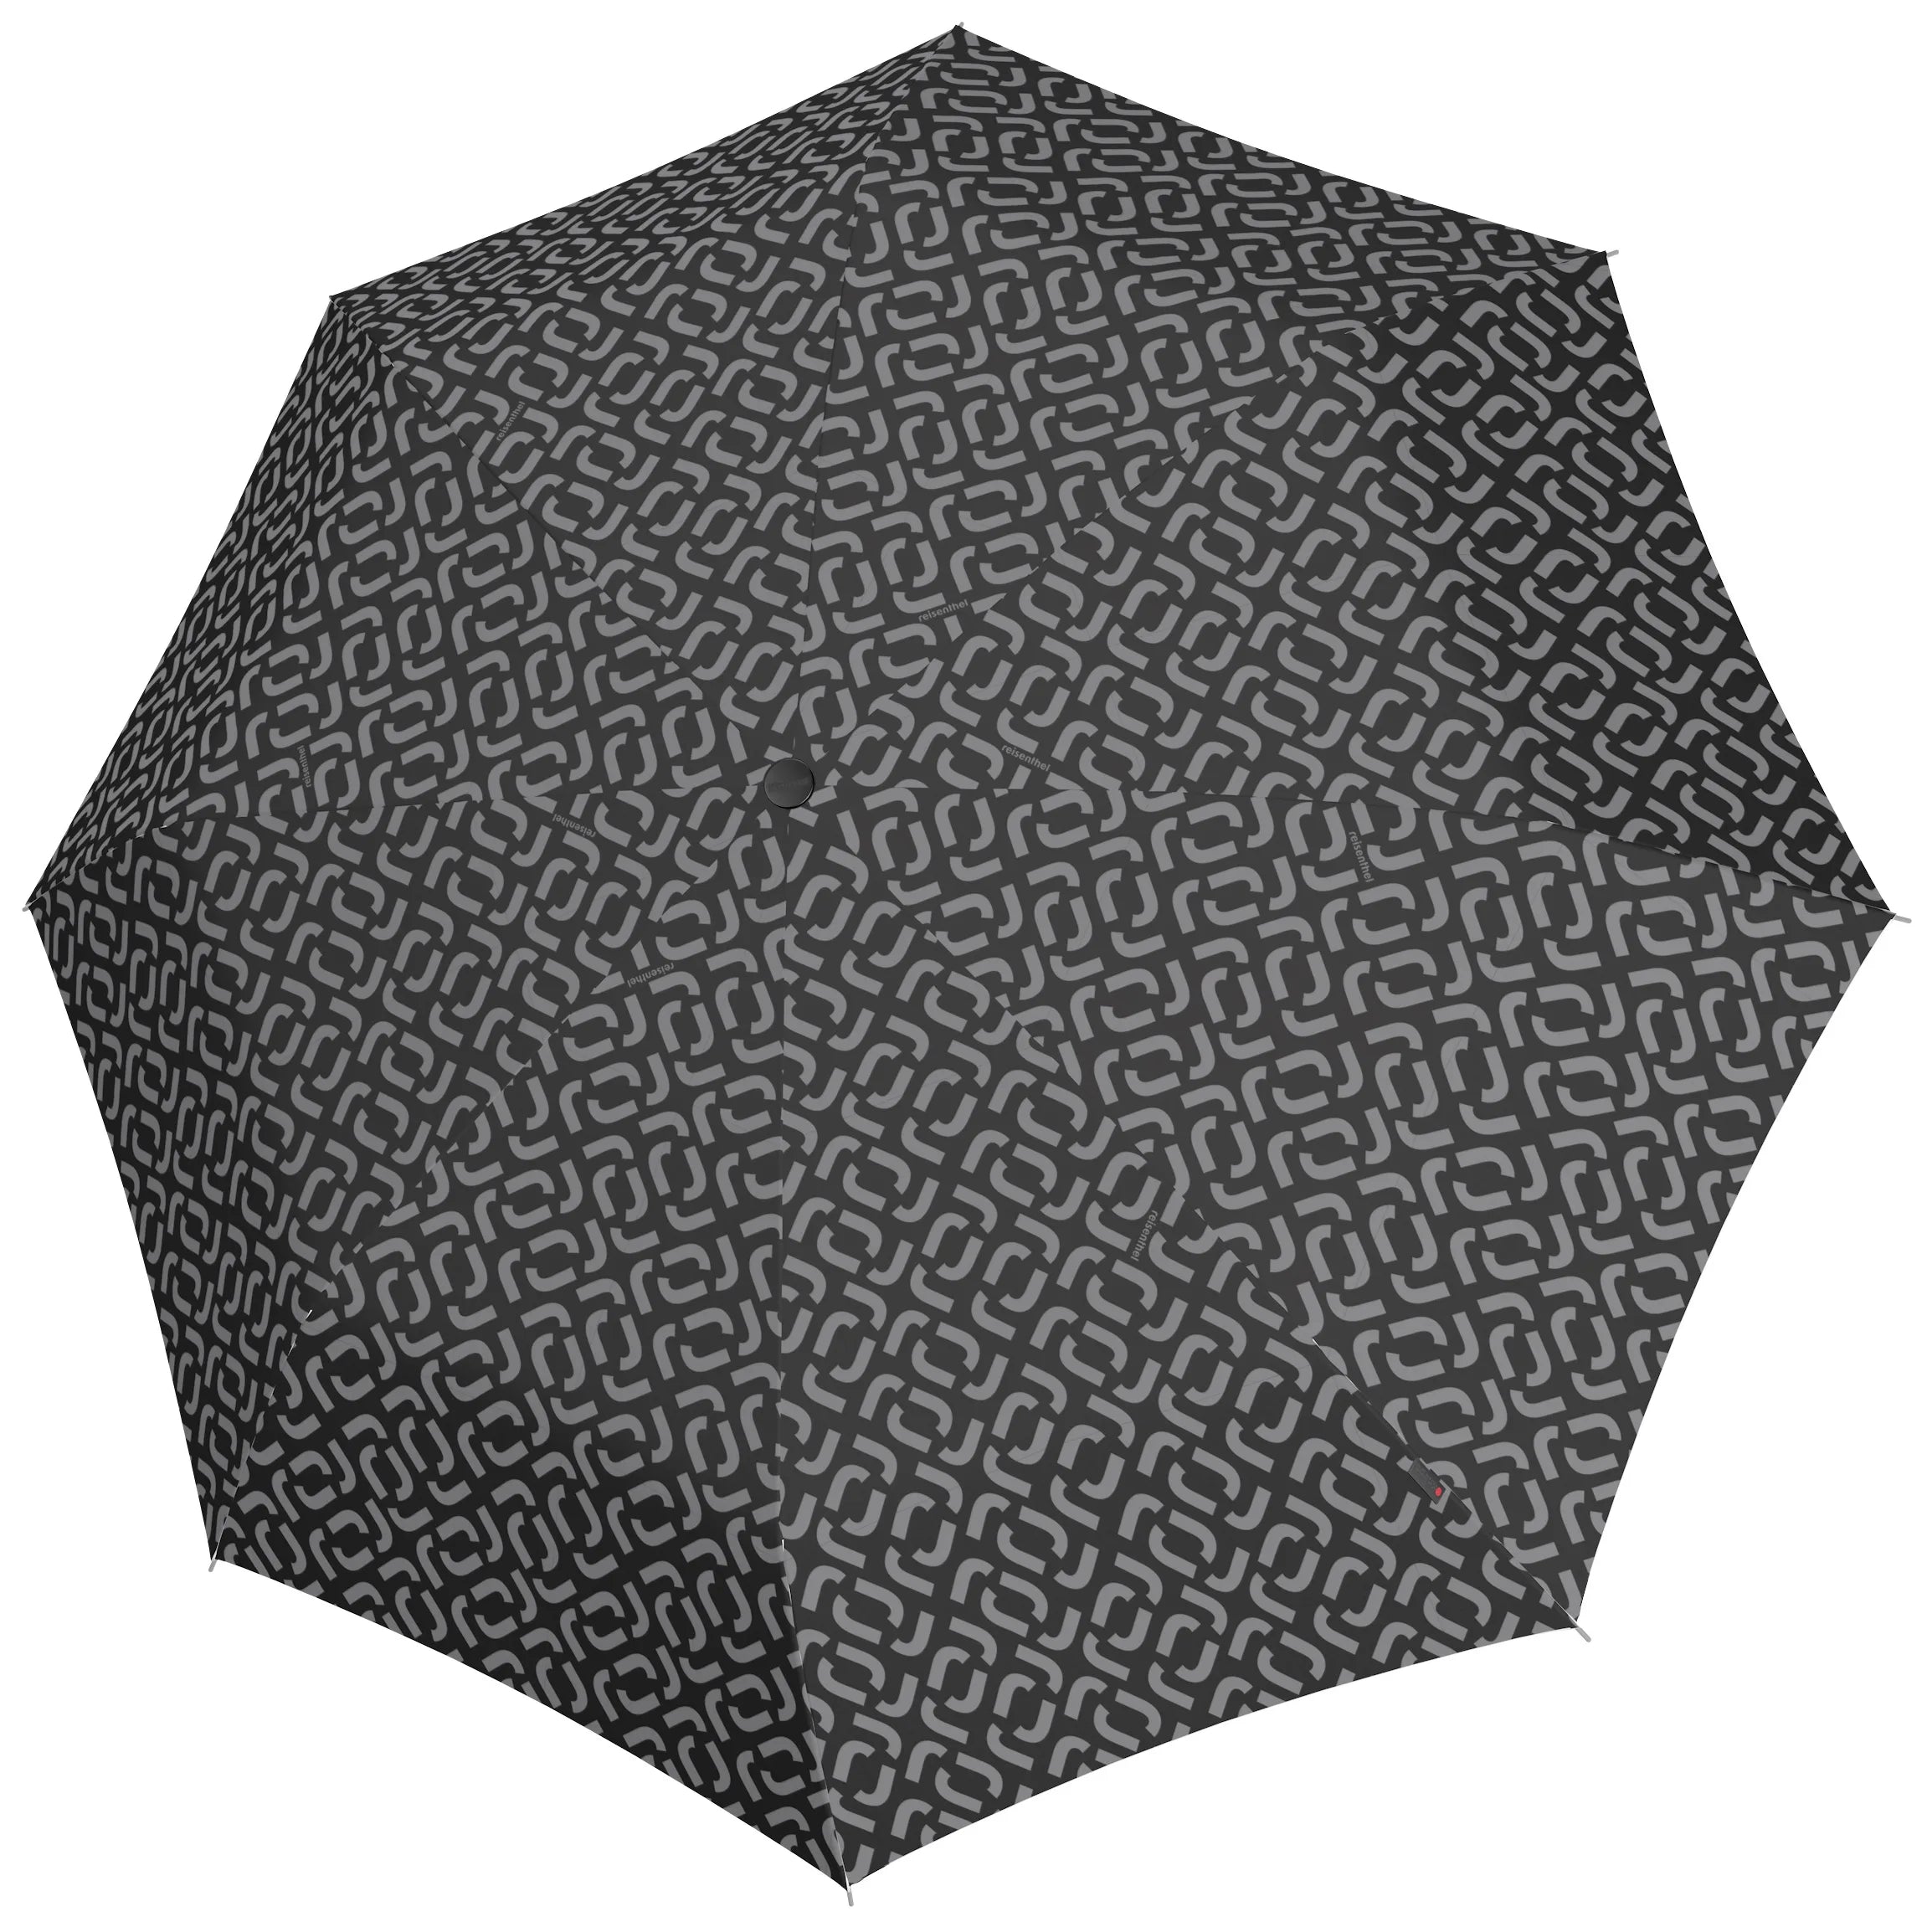 Reisenthel Traveling Umbrella Pocket Duomatic - Signature Black